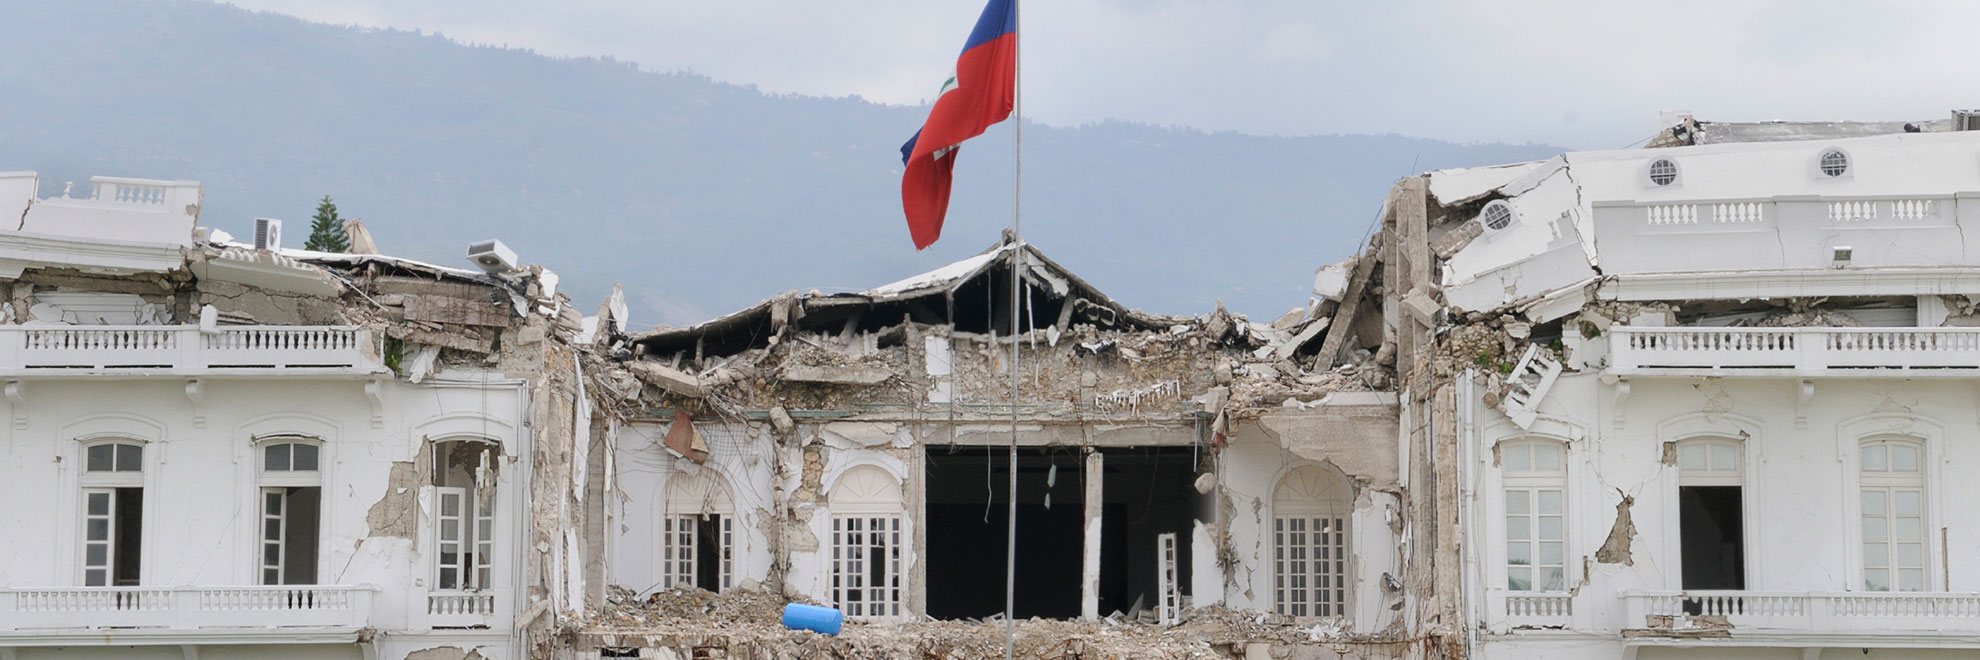 Haiti broken palace